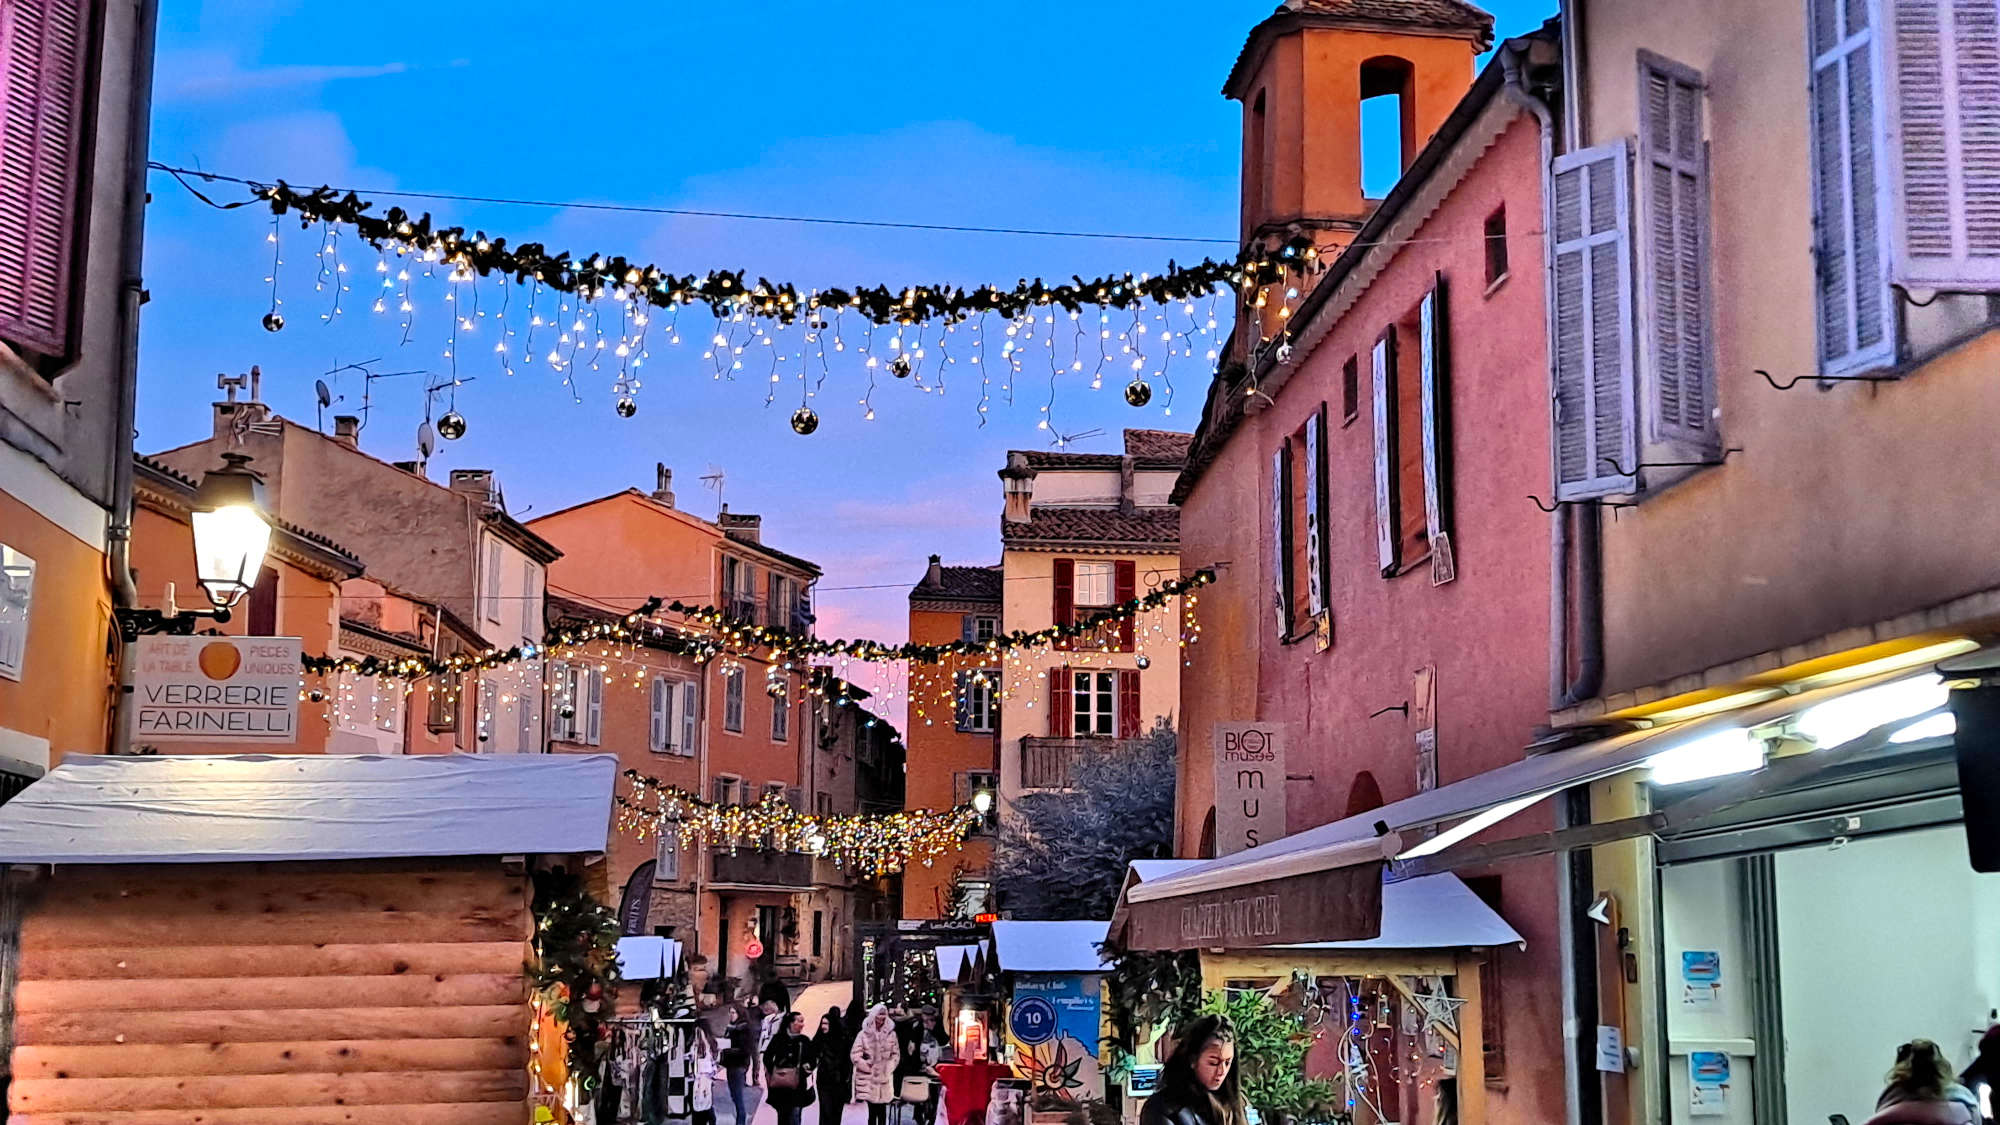 Pendant vos vacances sur la Côte d’Azur, découvrez et visitez le joli village provençal de Biot